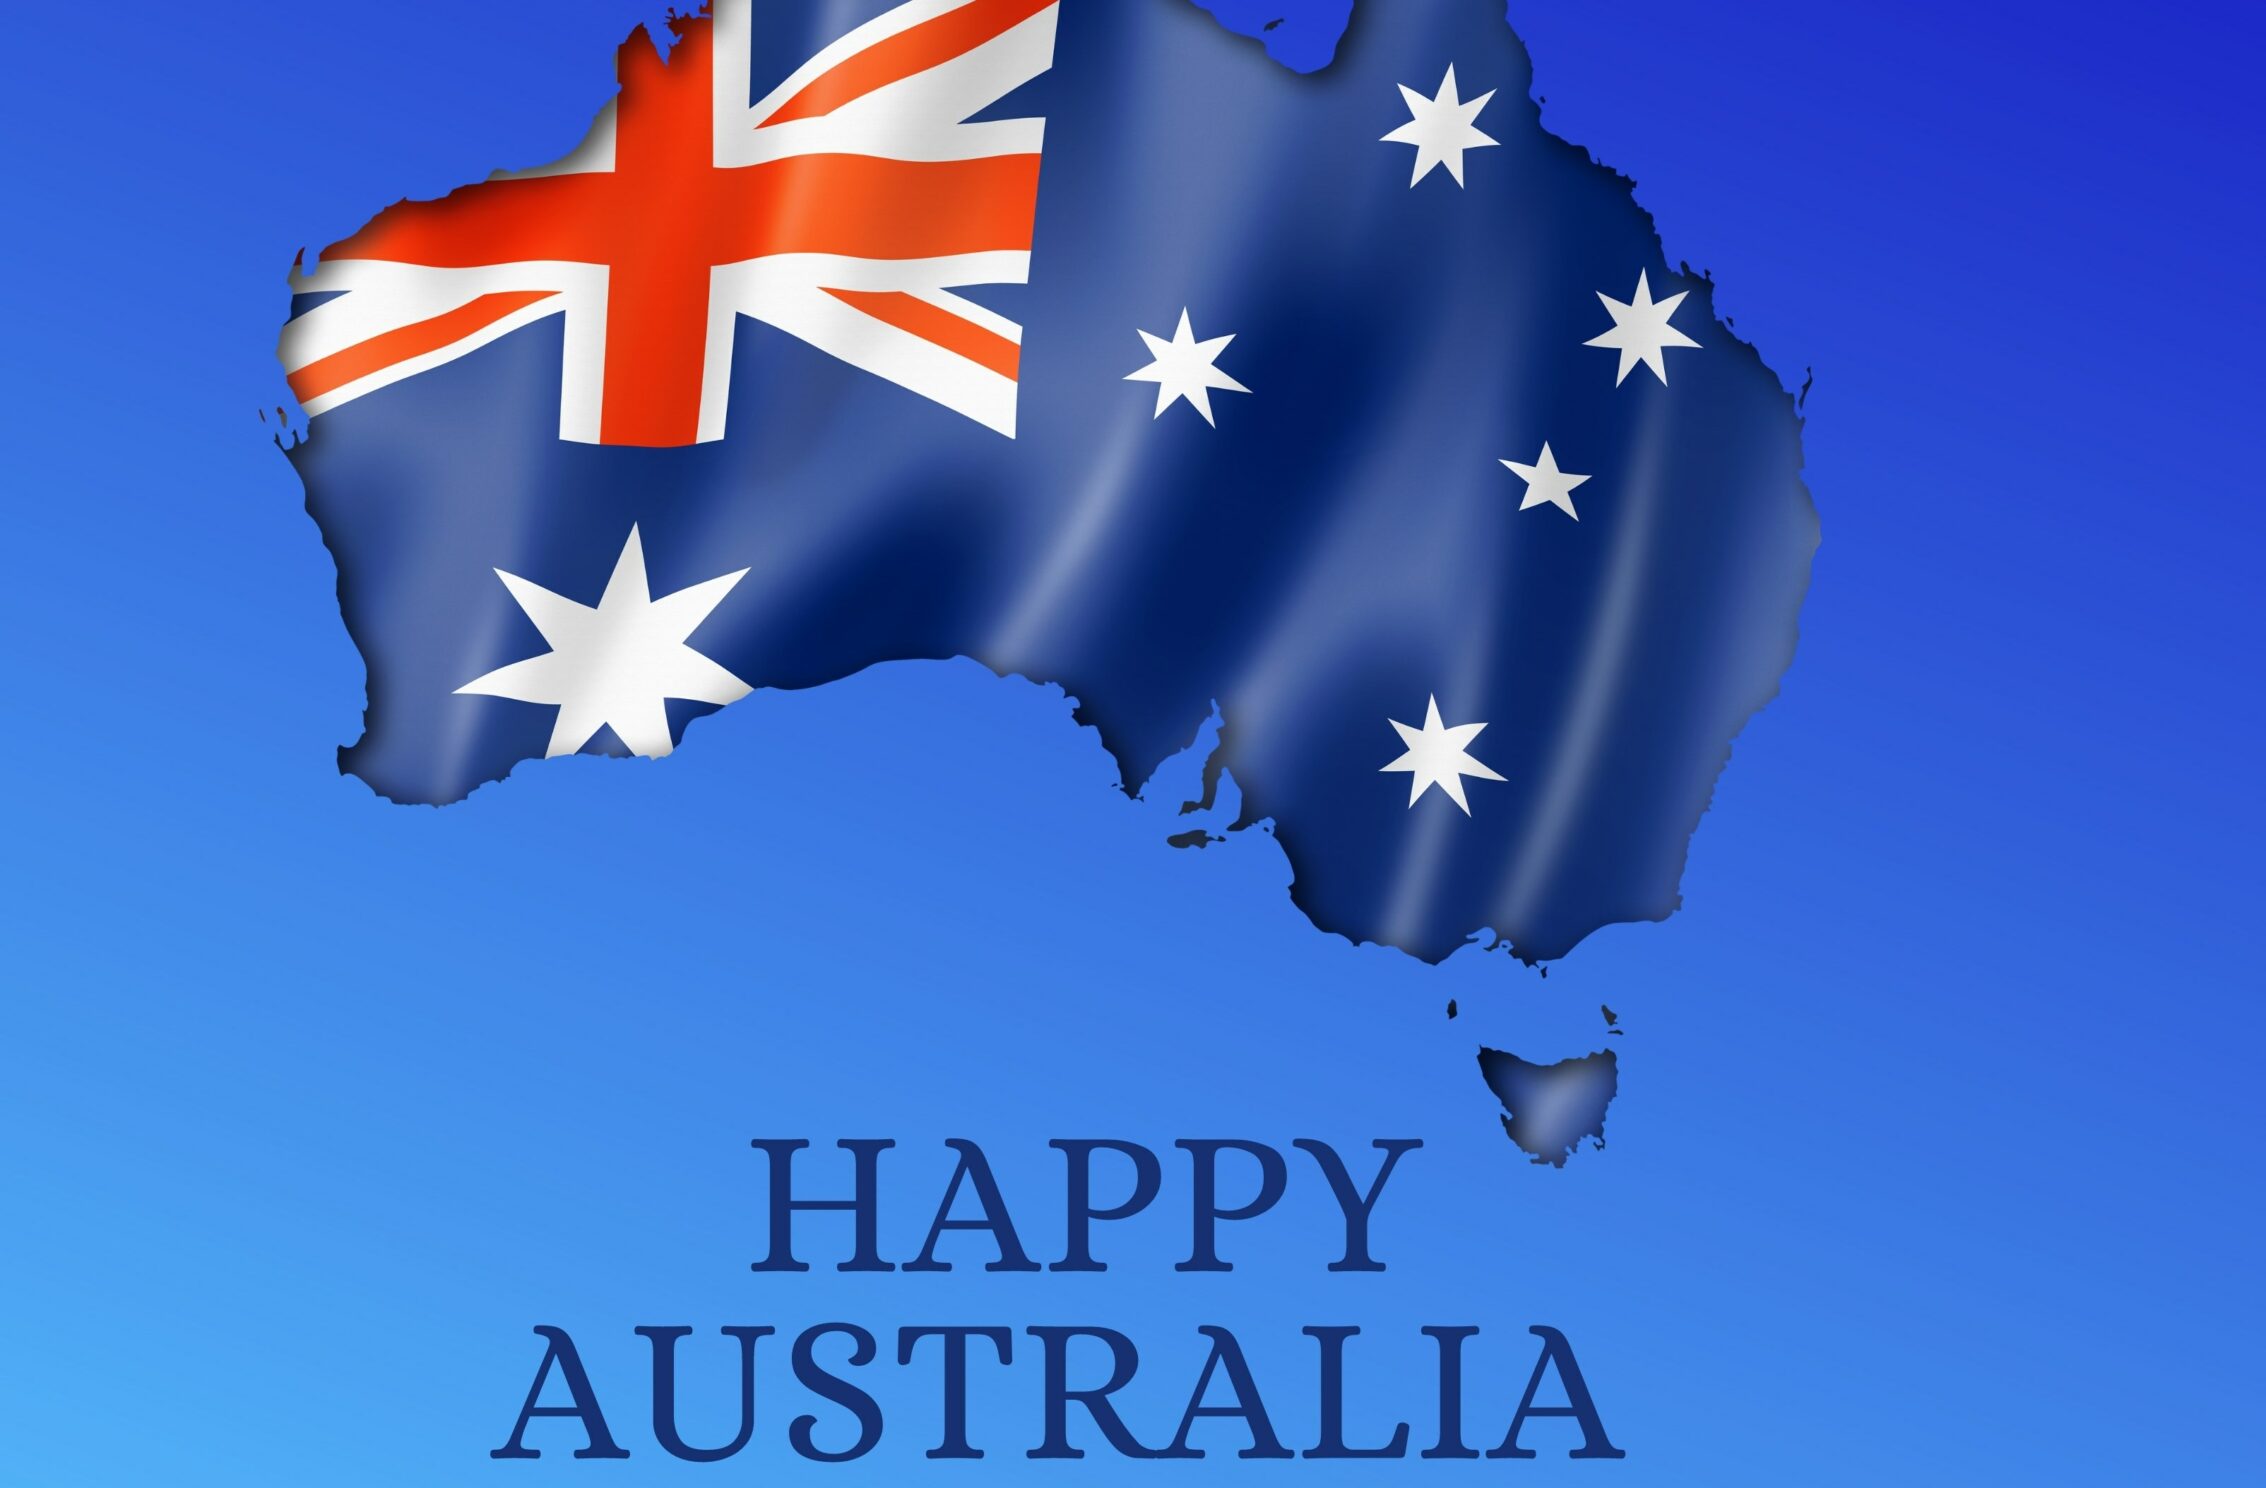 2266x1488 iPad Mini wallpapers Happy Australia Day iPad Wallpaper 2266x1488 pixels resolution